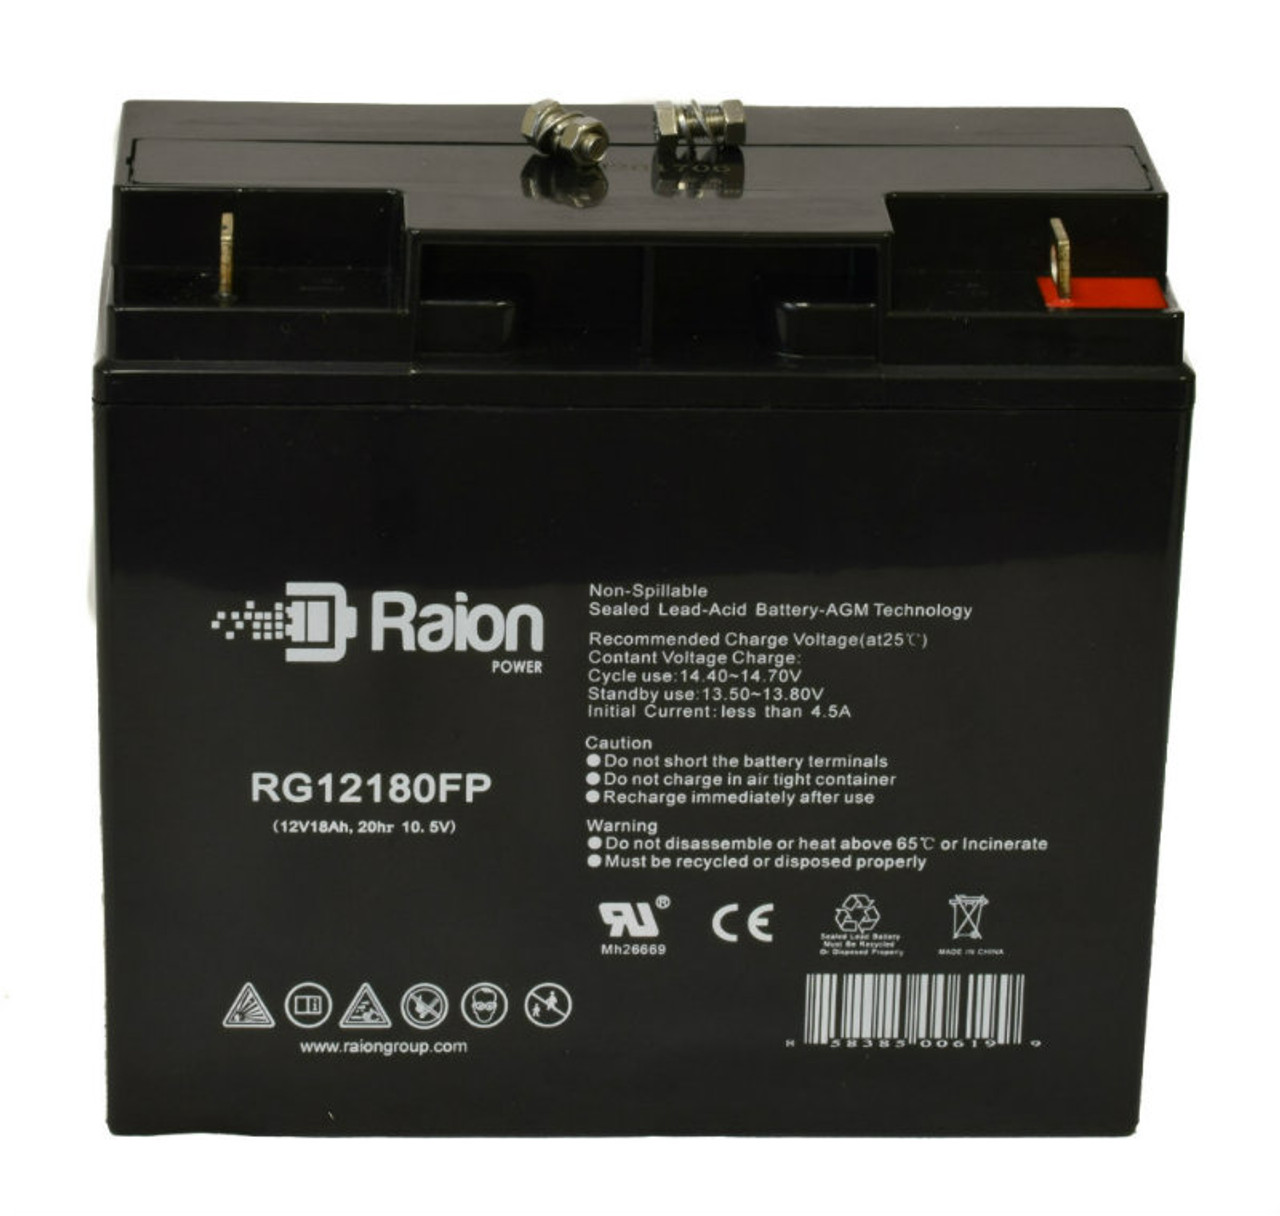 Raion Power RG12180FP 12V 18Ah AGM Battery for Vector VW012APM Start-It 450 Amp Jump Starter